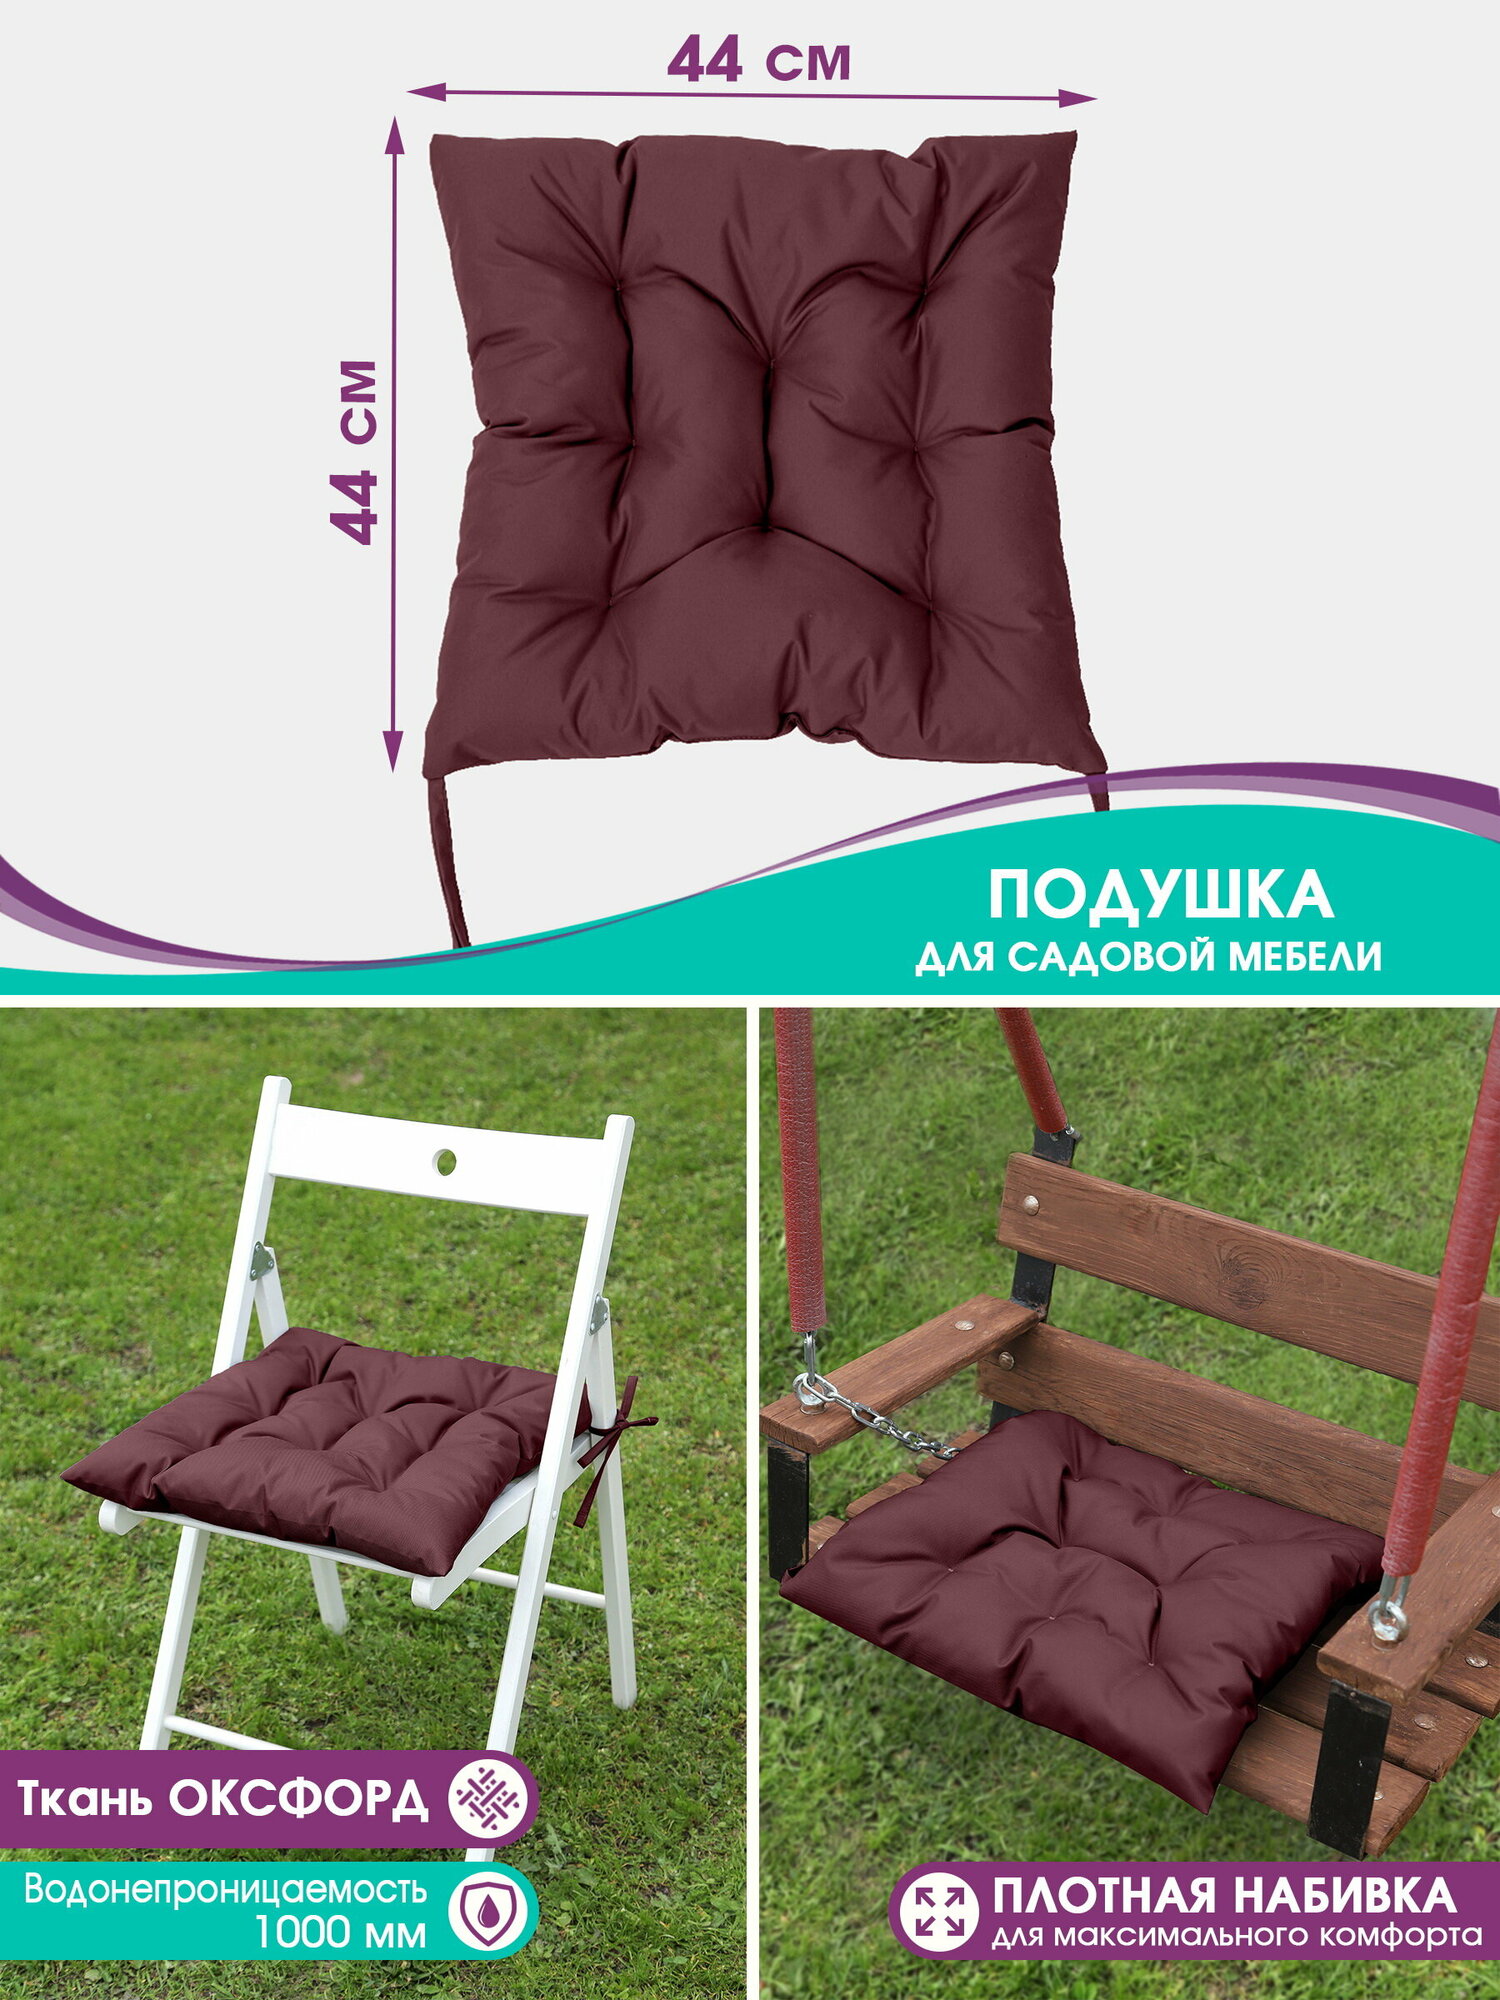 Подушки для садовой мебели Bio-Line, на стул, кресло, для качели, водонепроницаемая, на завязках, 44*44 см бордо